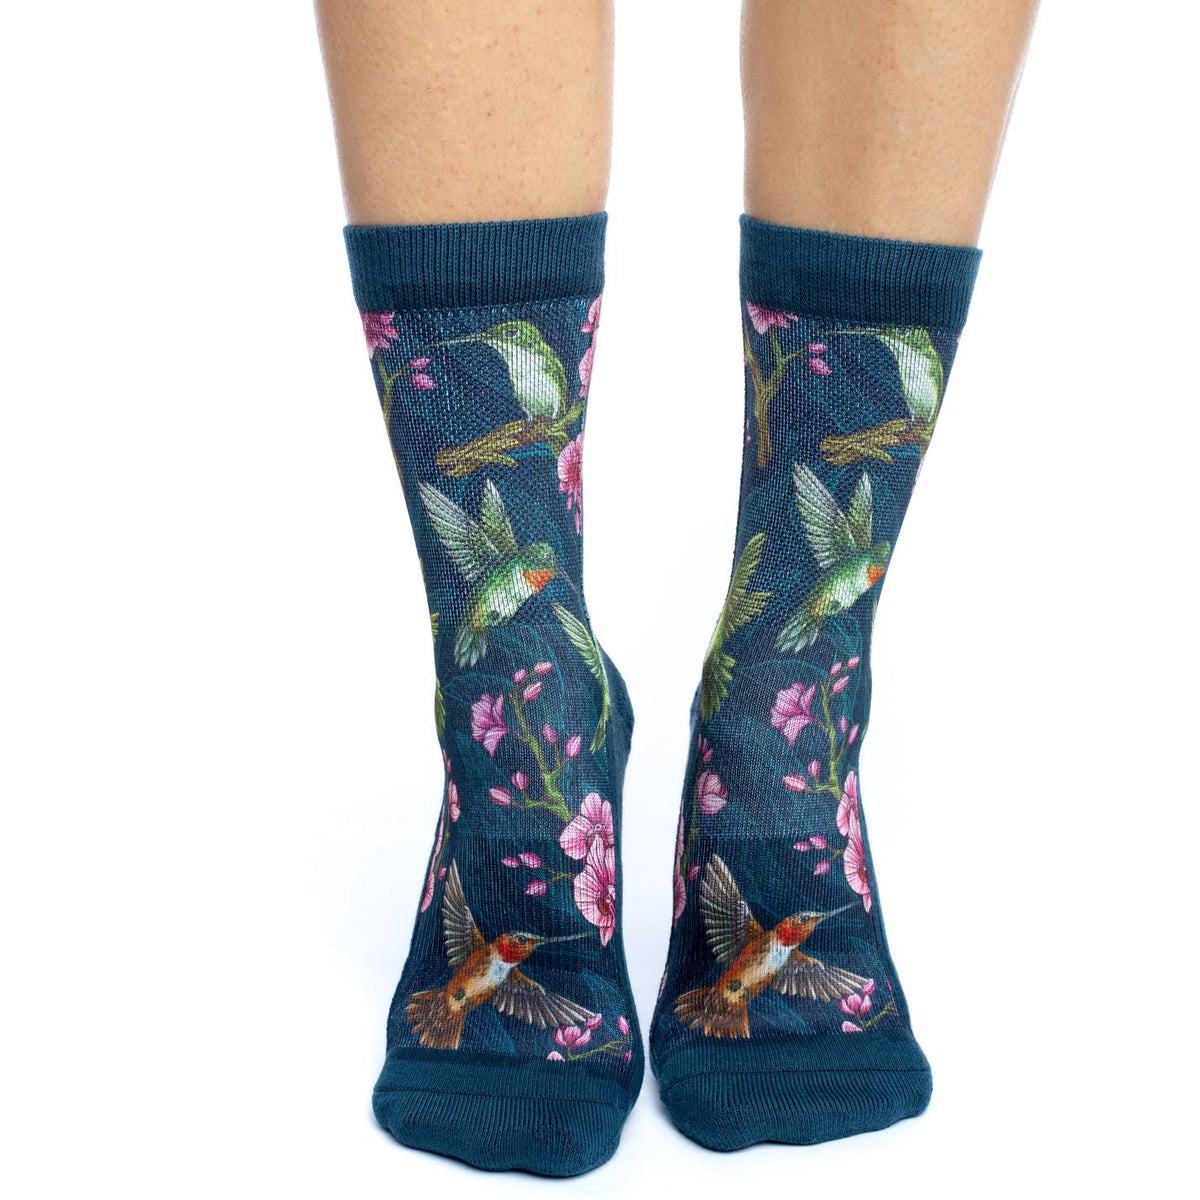 Floral Socks – Good Luck Sock